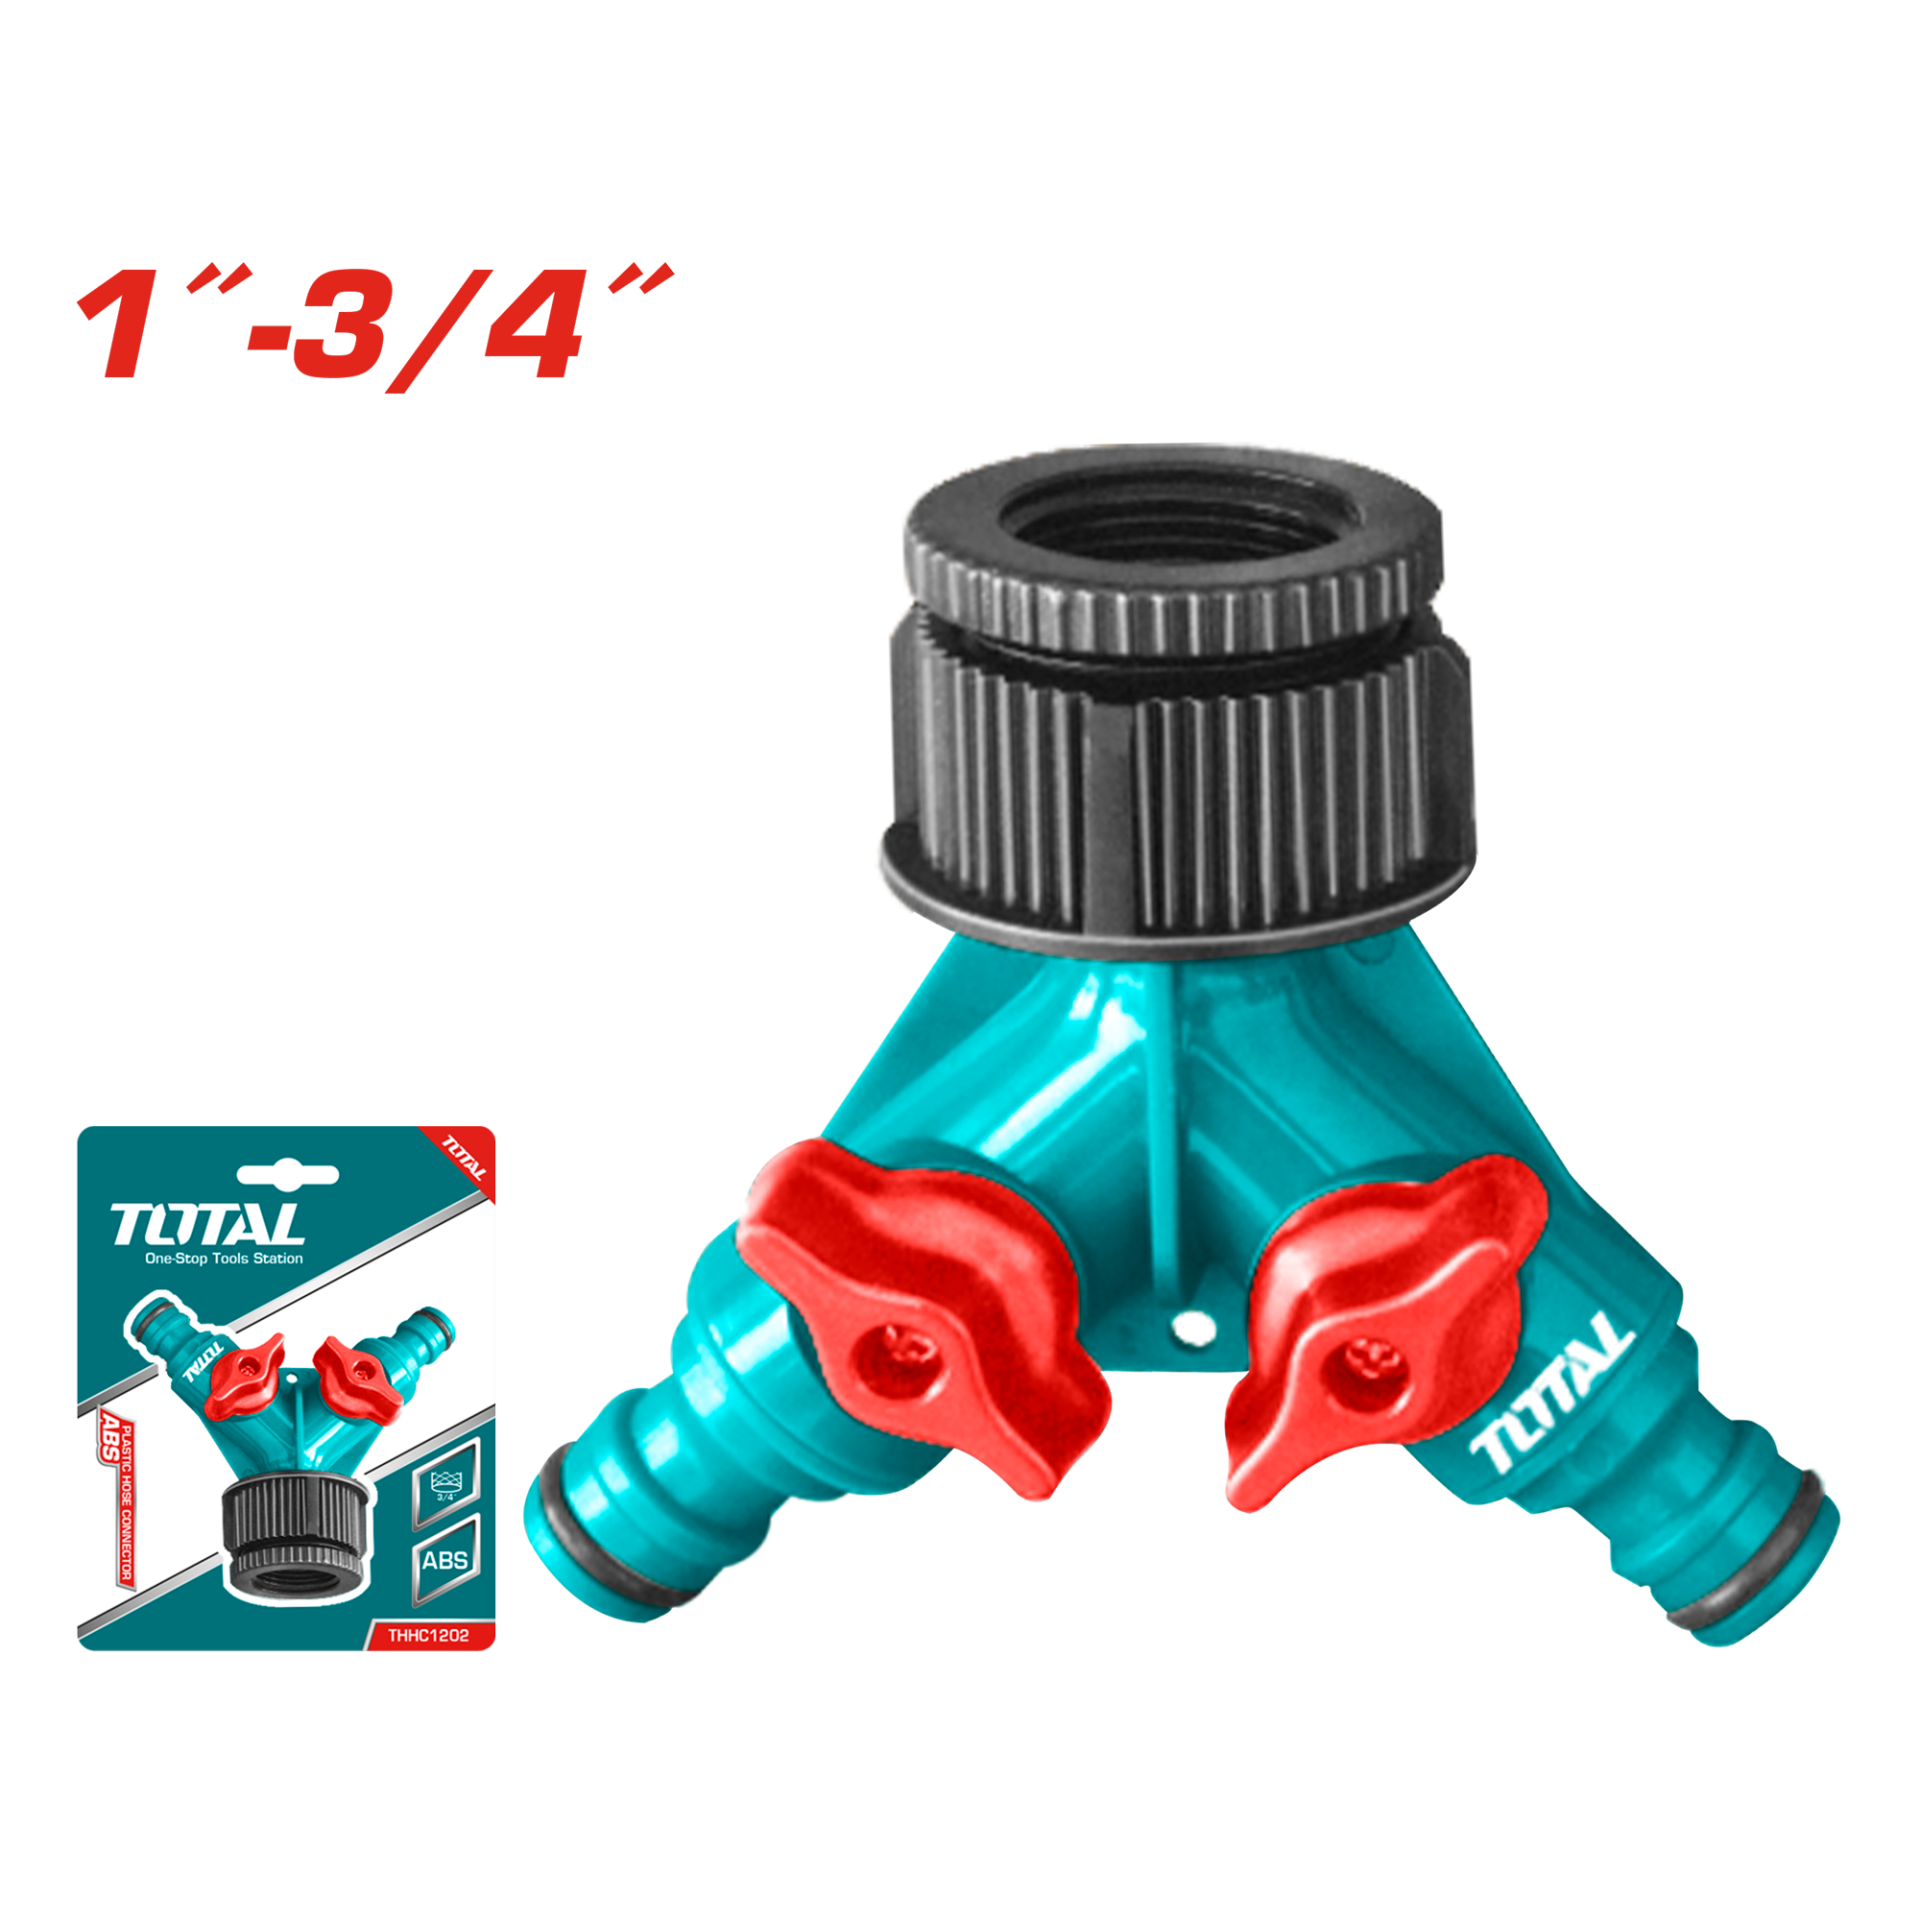 Total Plastik Hortum Bağlantı Adaptörü (Çift Çıkışlı) / THHC1202